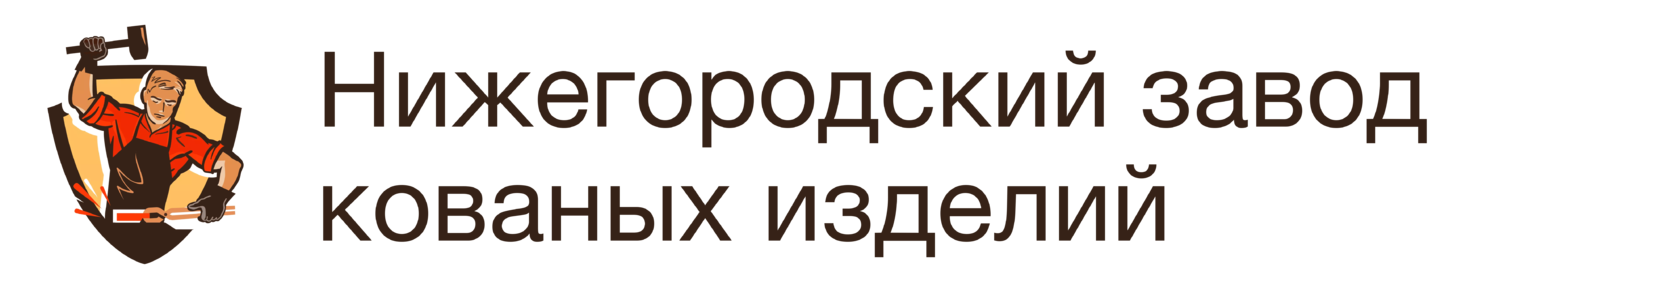 Завод кованых изделий в Нижнем Новгороде